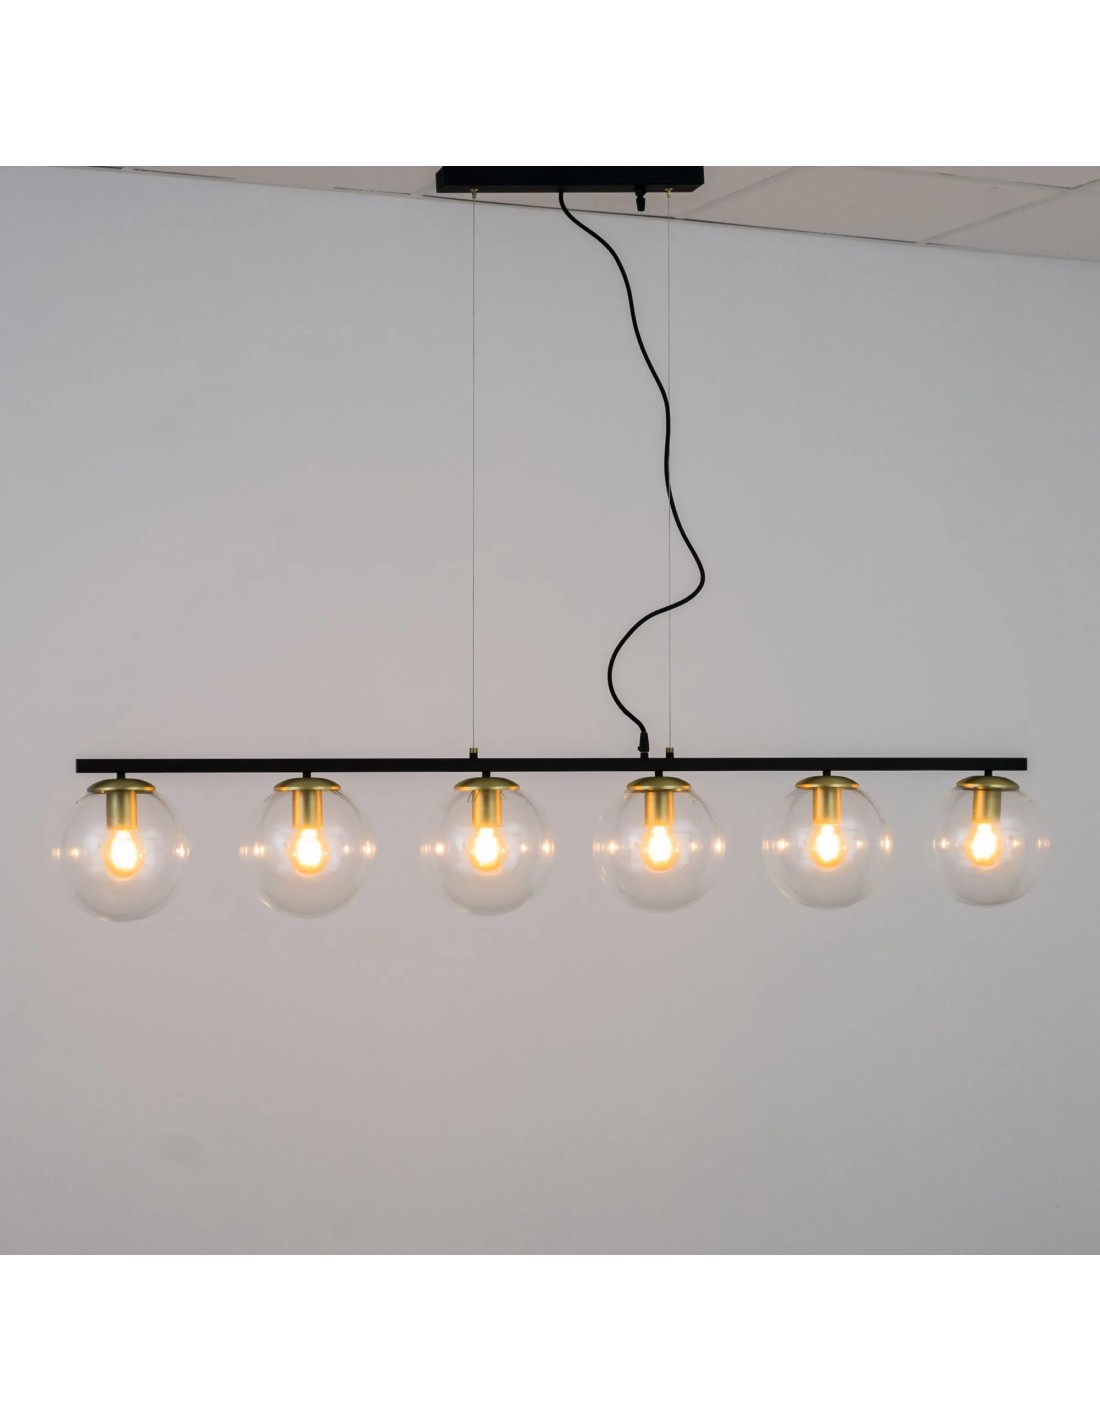 lámparas de techo vintage ideales perfecta para iluminar comedores y barras de bar